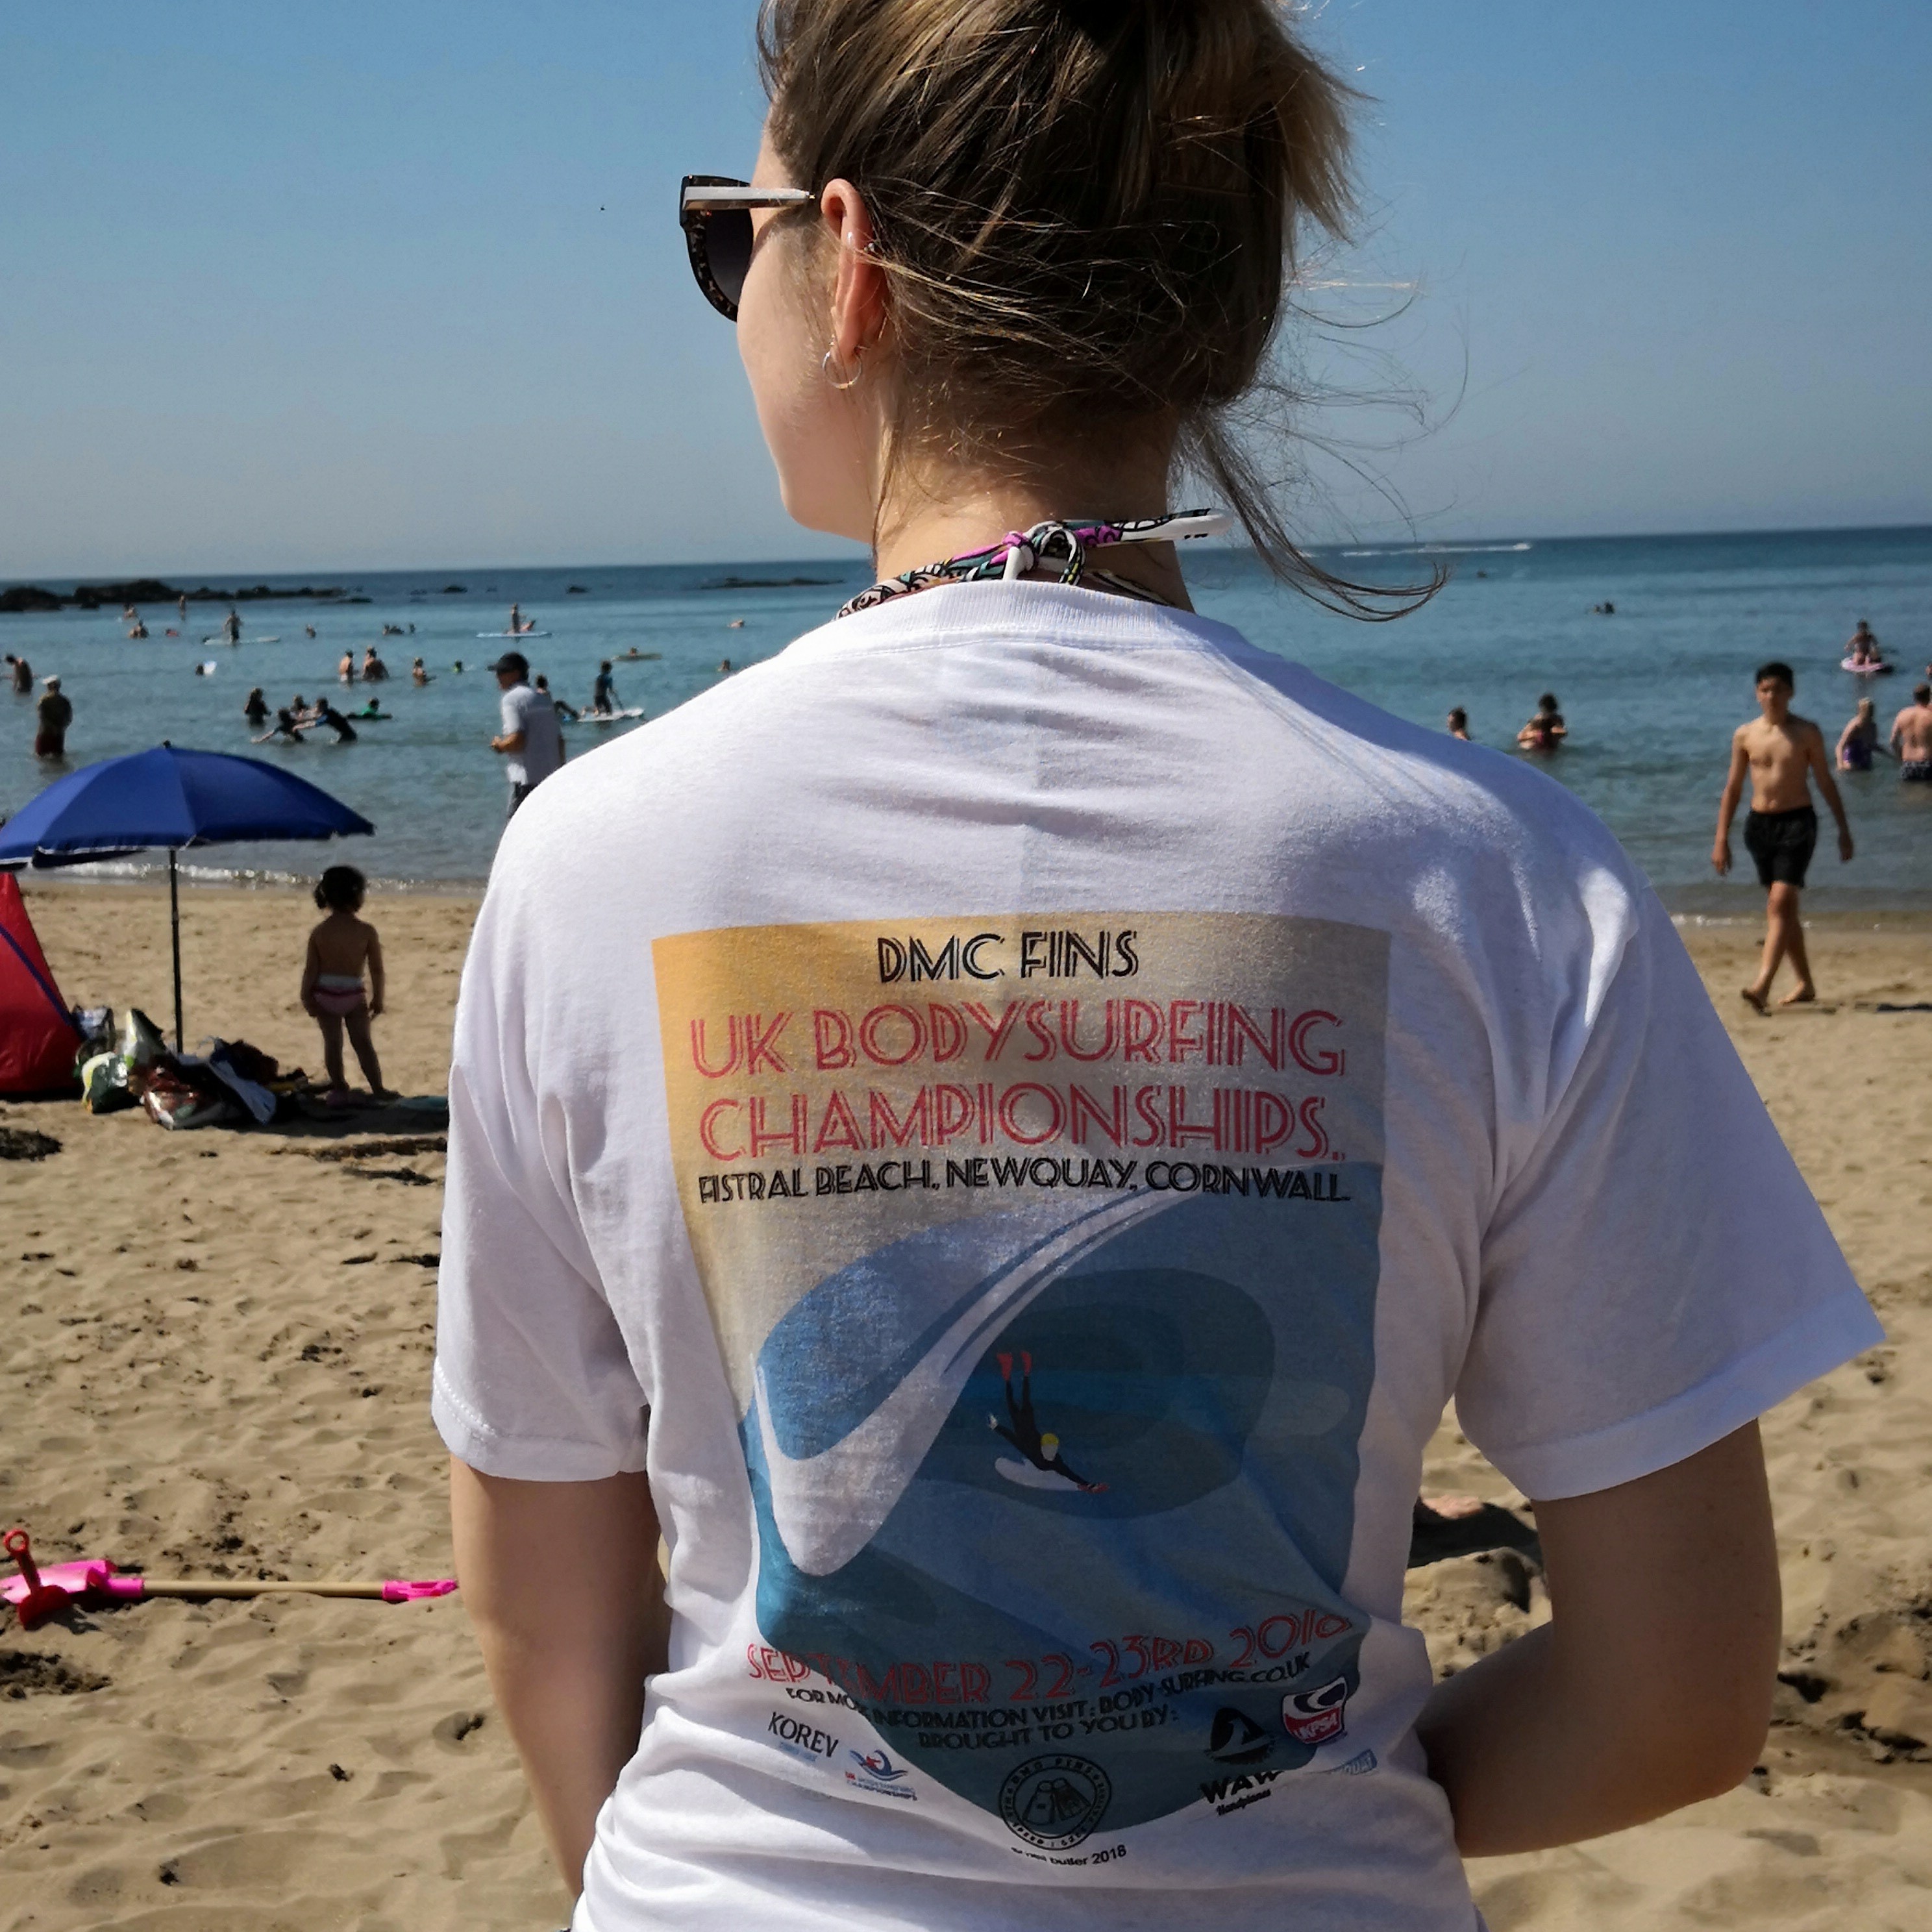 UK Bodysurfing Championships t-shirts